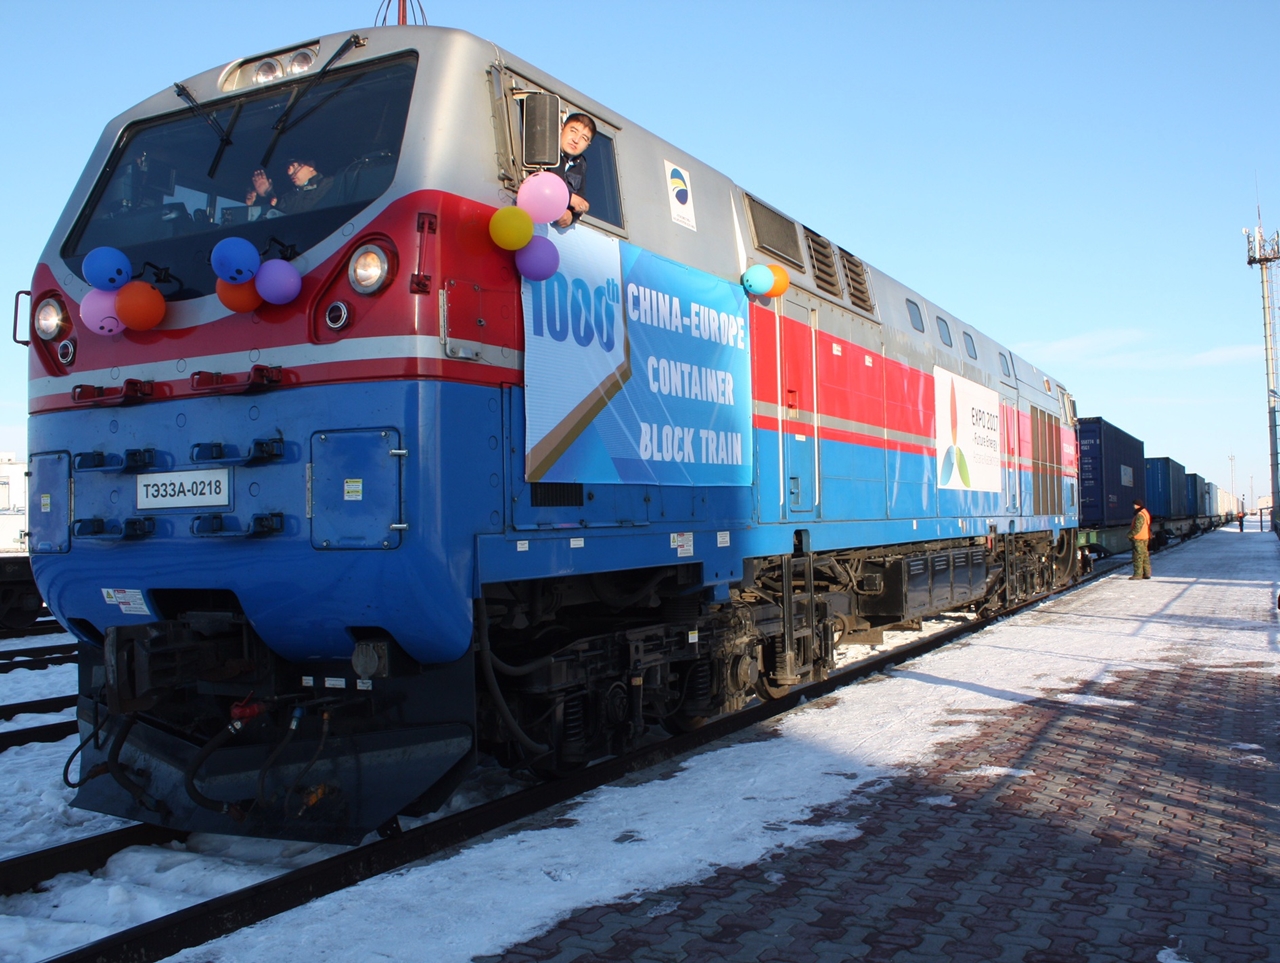 Kazahsztánon keresztül haladnak a Kínából Európába tartó nemzetközi konténervonatok. December elején ünnepelték az ezredik fuvart (forrás: Railway Pro)